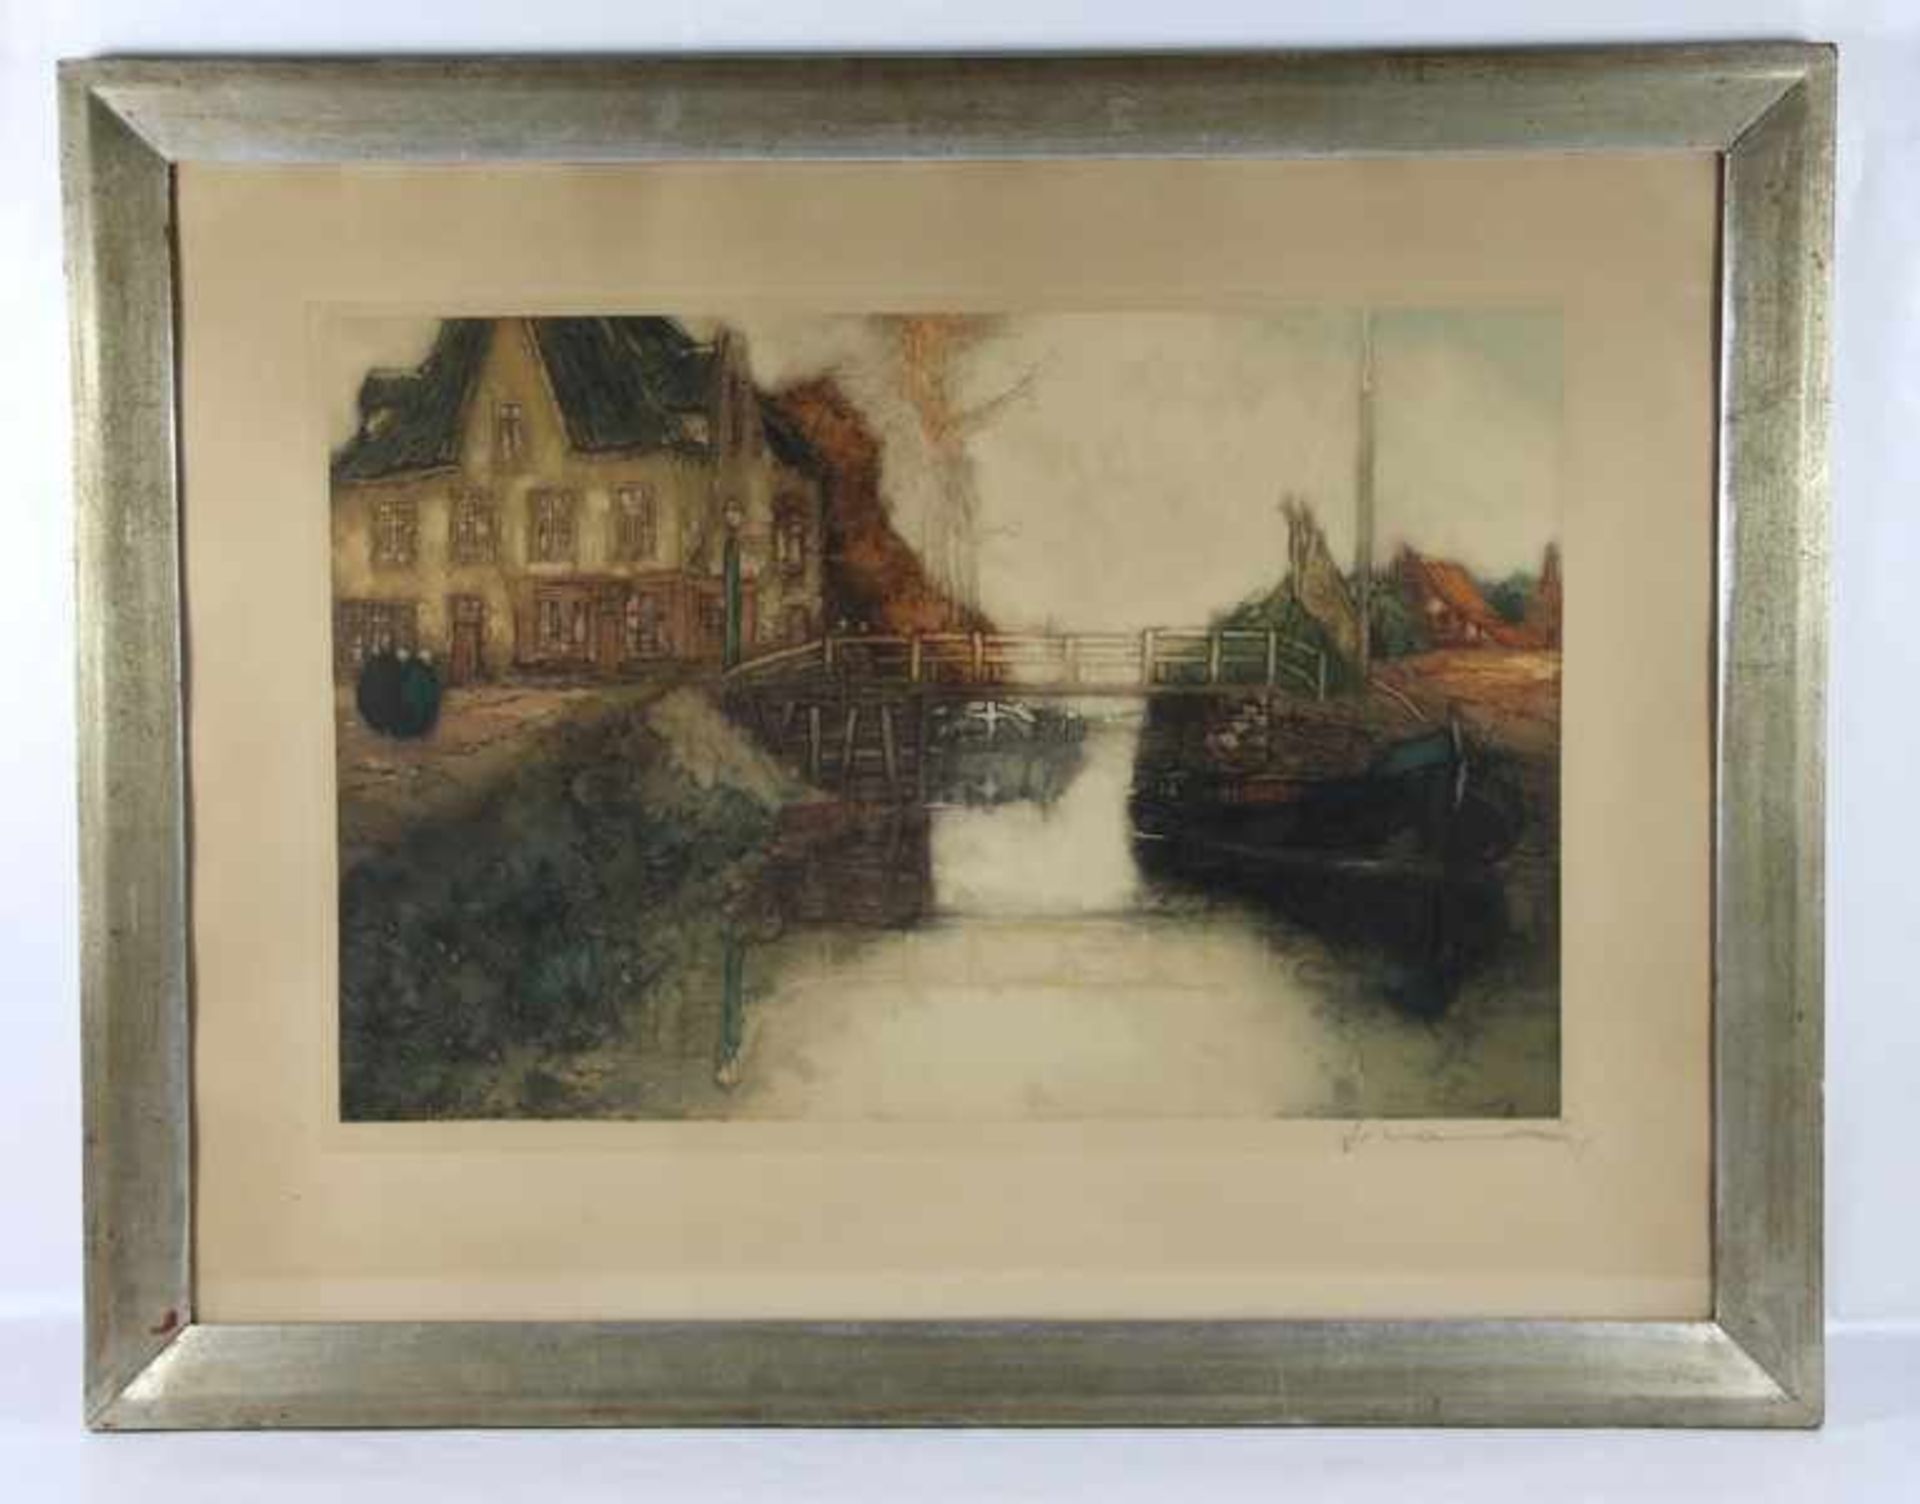 Unbekannter KünstlerFarblithographie, Boot an einer Brücke auf einem Kanal, links ein Gebäude, unten